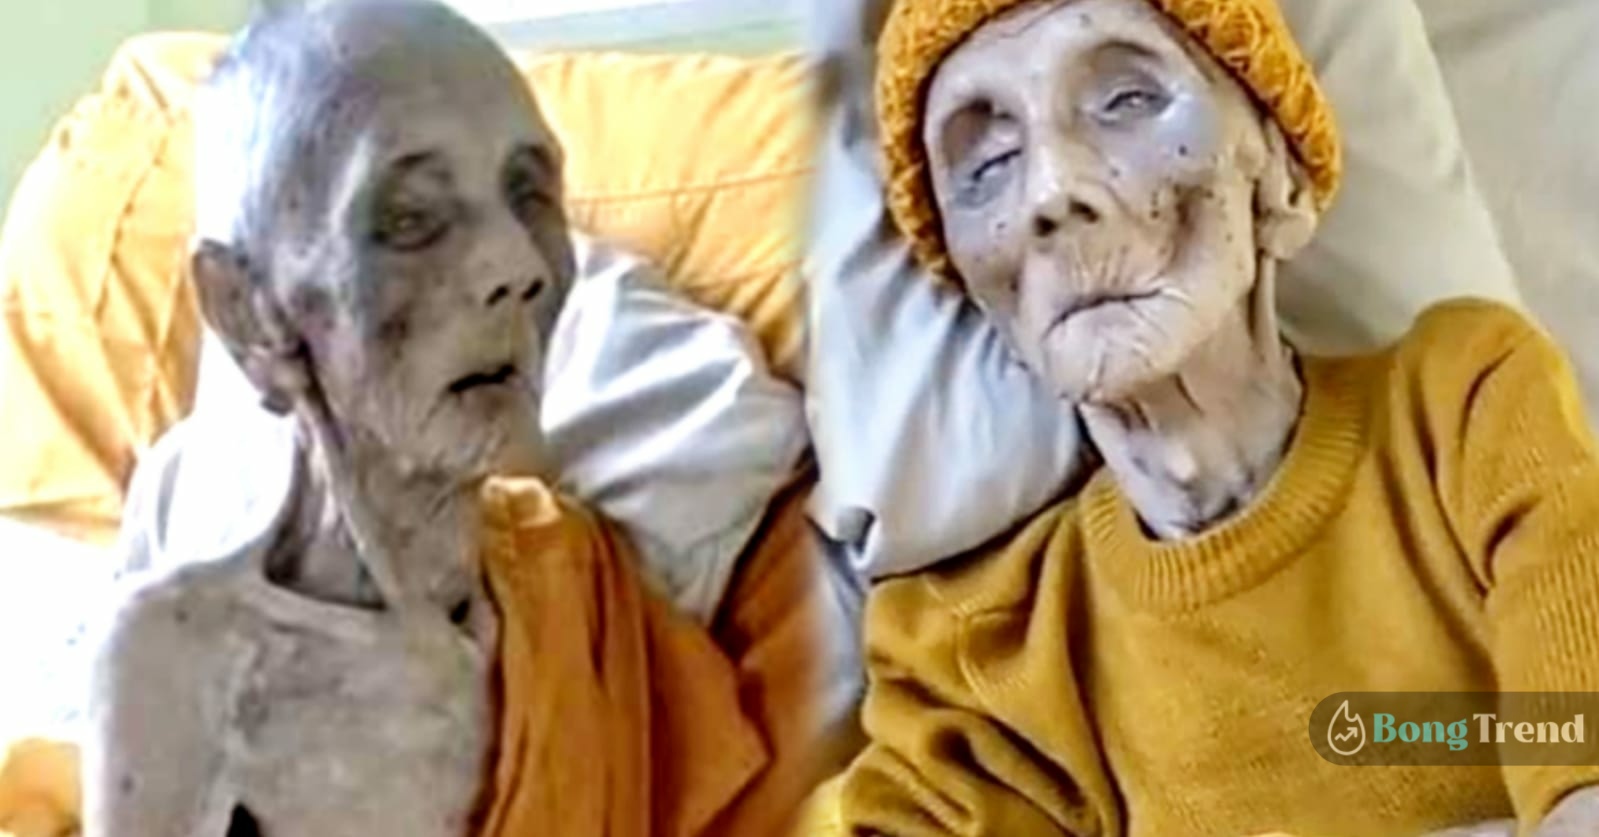 সোশ্যাল মিডিয়া,Social Media,ভাইরাল ছবি,Viral Photo,সবচেয়ে বয়স্ক মহিলা,Oldest Woman,৩৯৯ বছরে জীবিত,Alive 399 Year